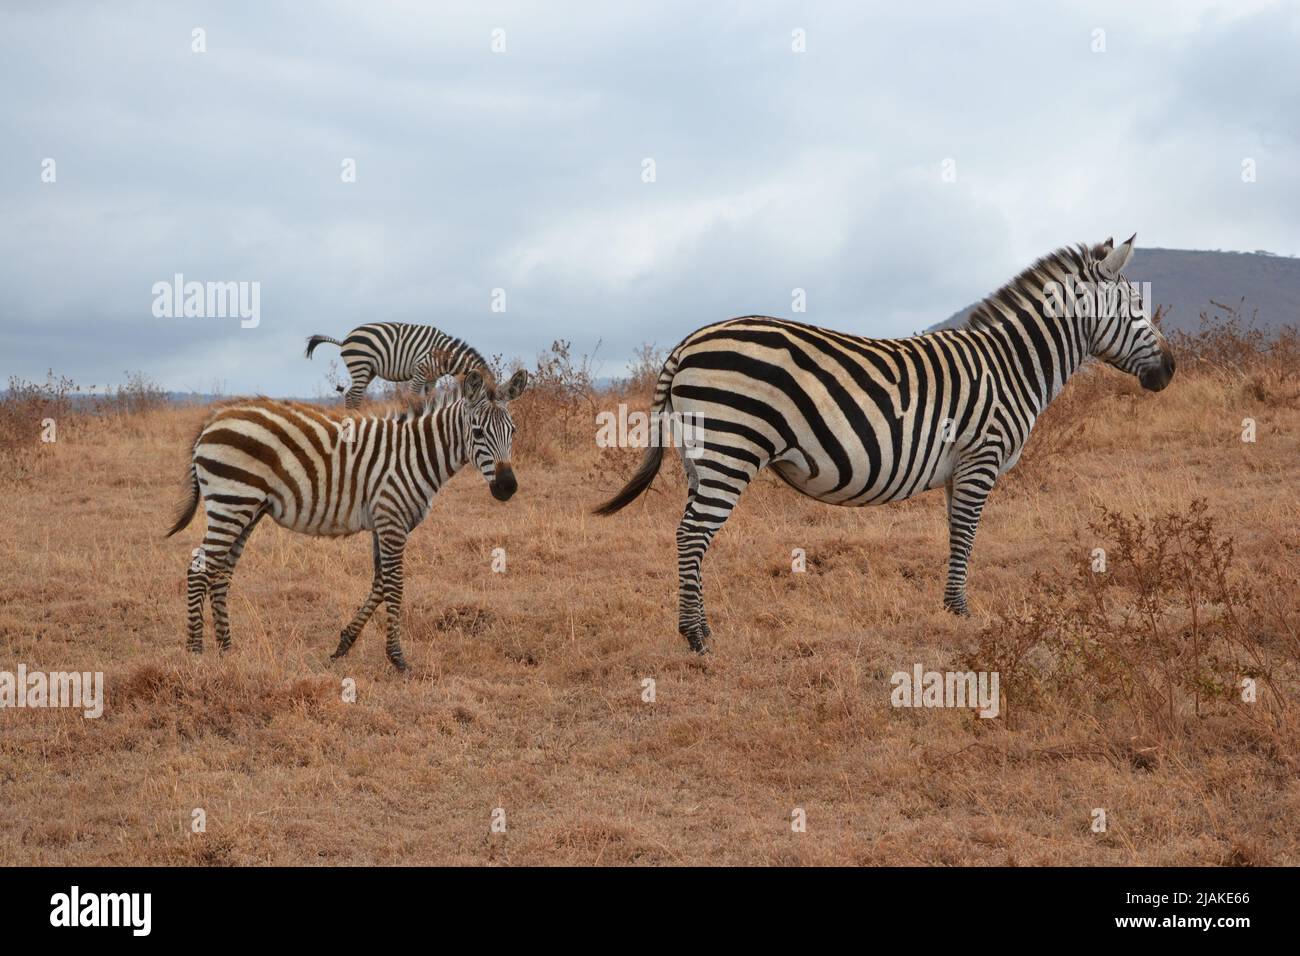 the wildlife babys  of the african savannah- Die Kinder der Savanne Afrikas Stock Photo